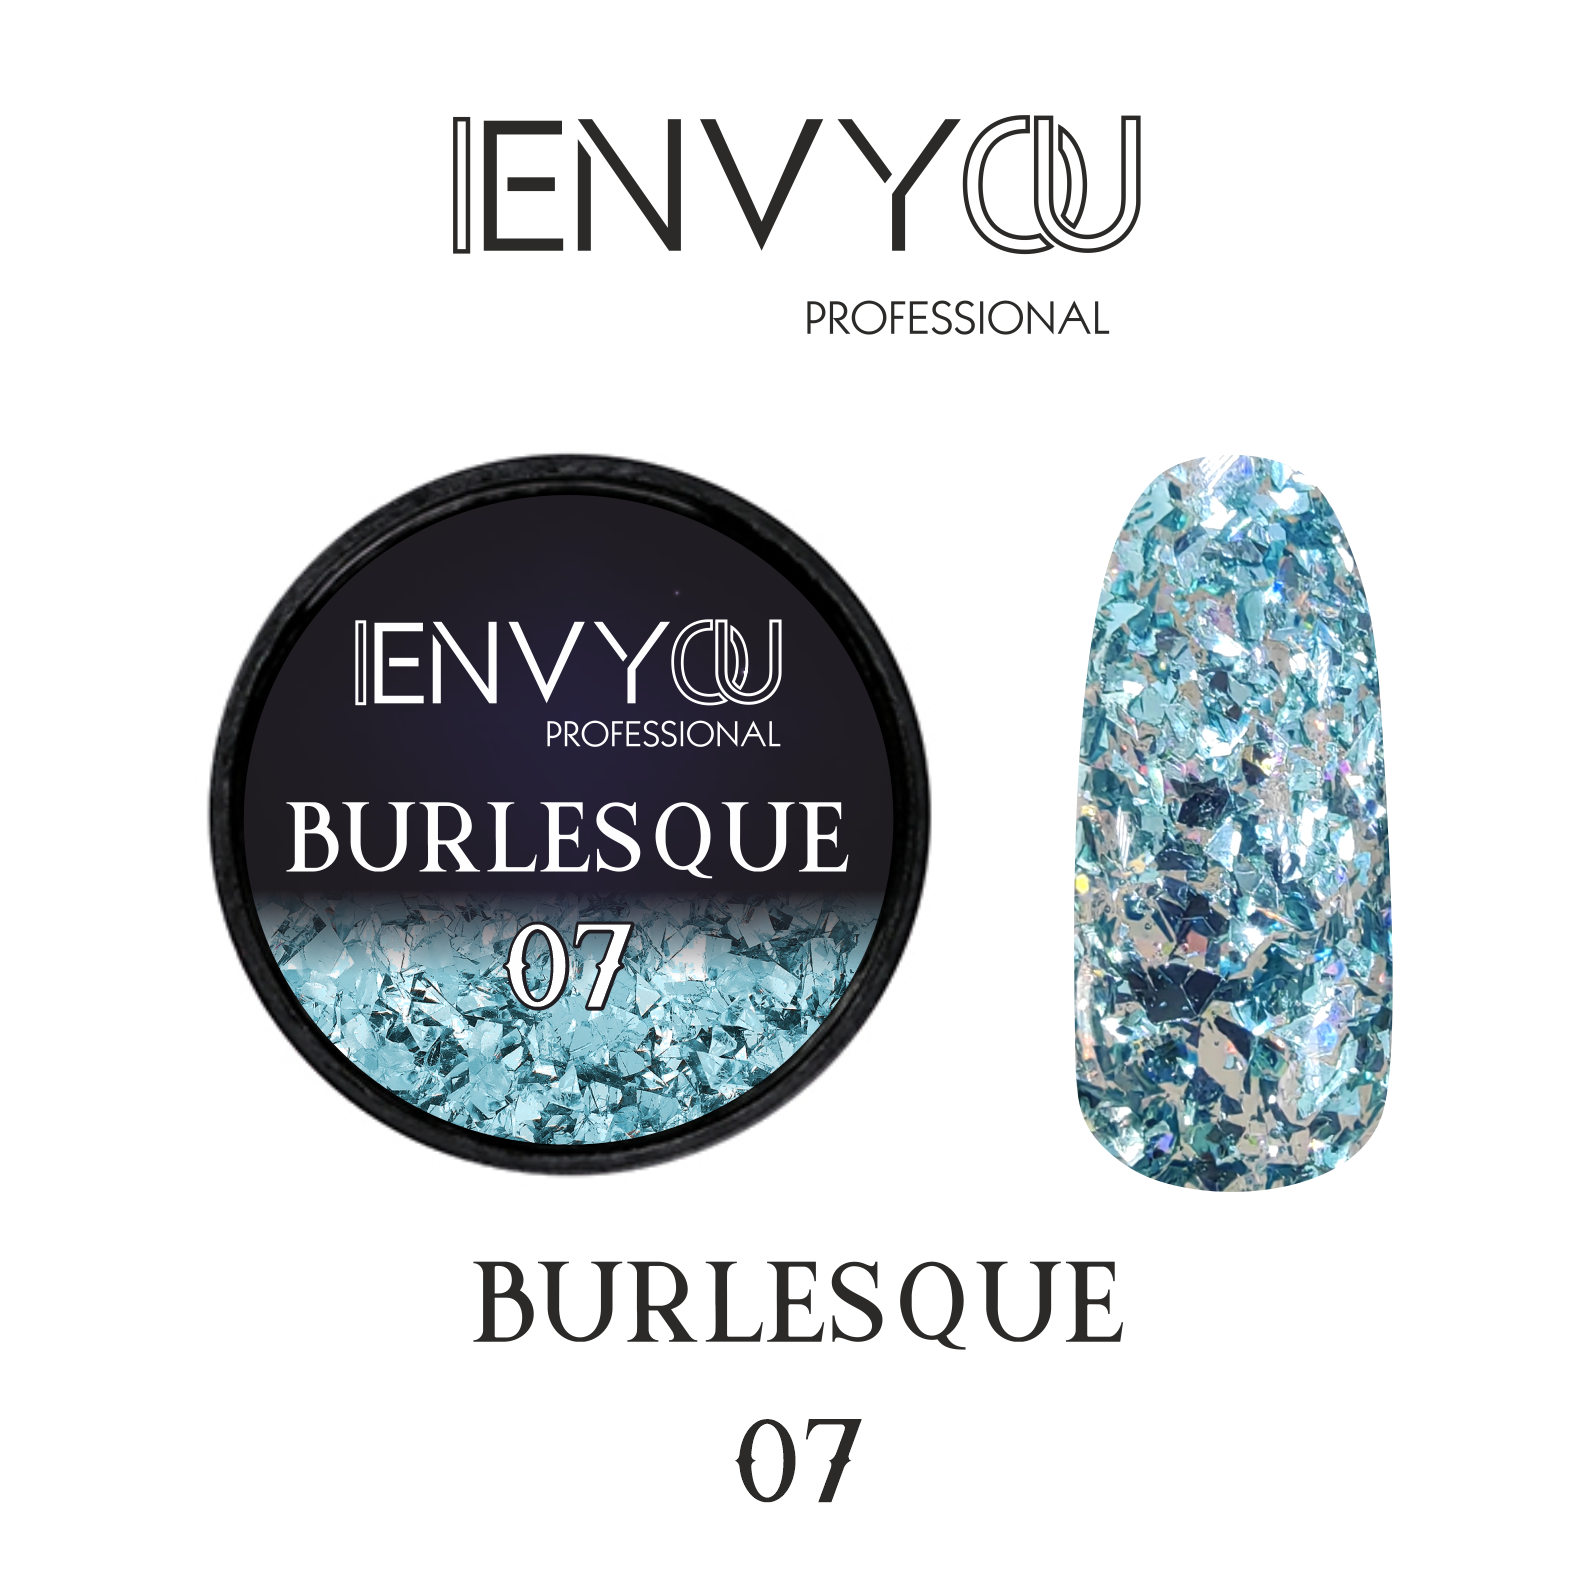 ENVY Burlesque 07 6g